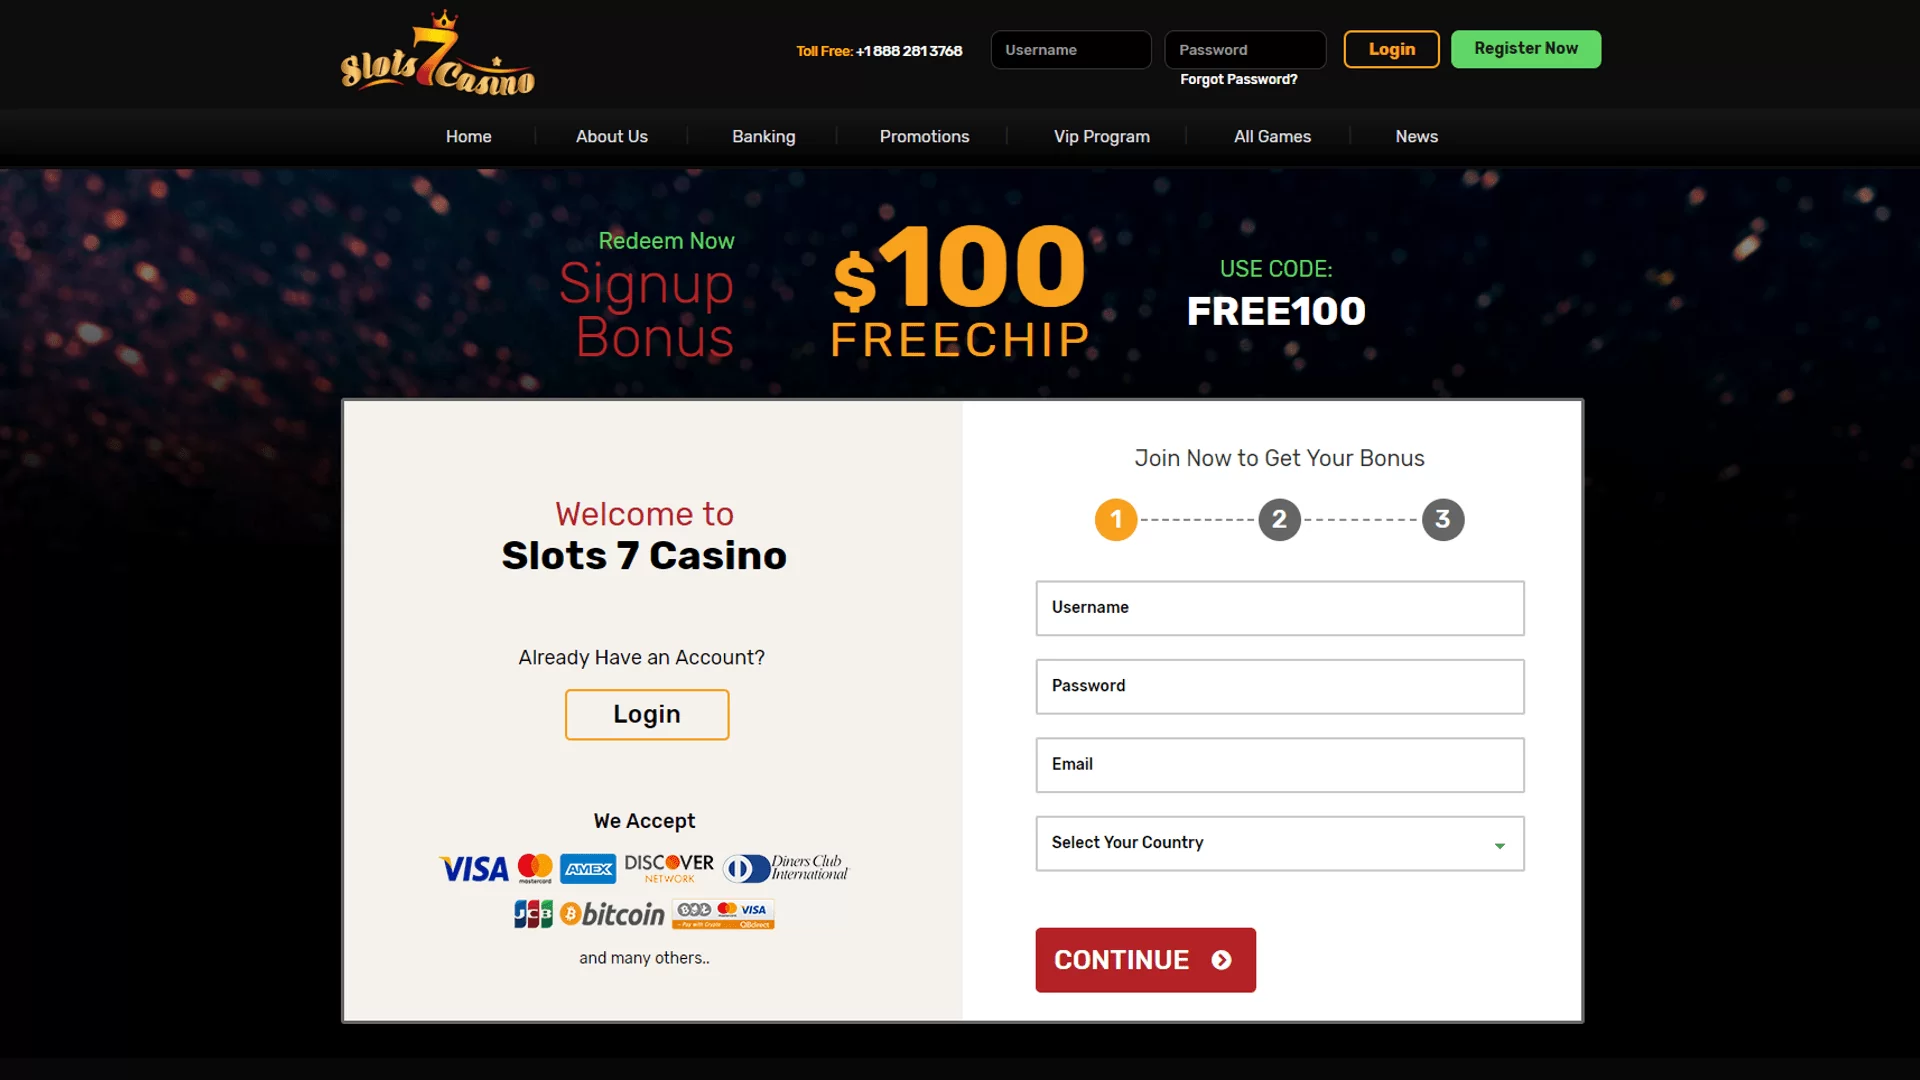 casino 7 бездепозитный бонус за регистрацию